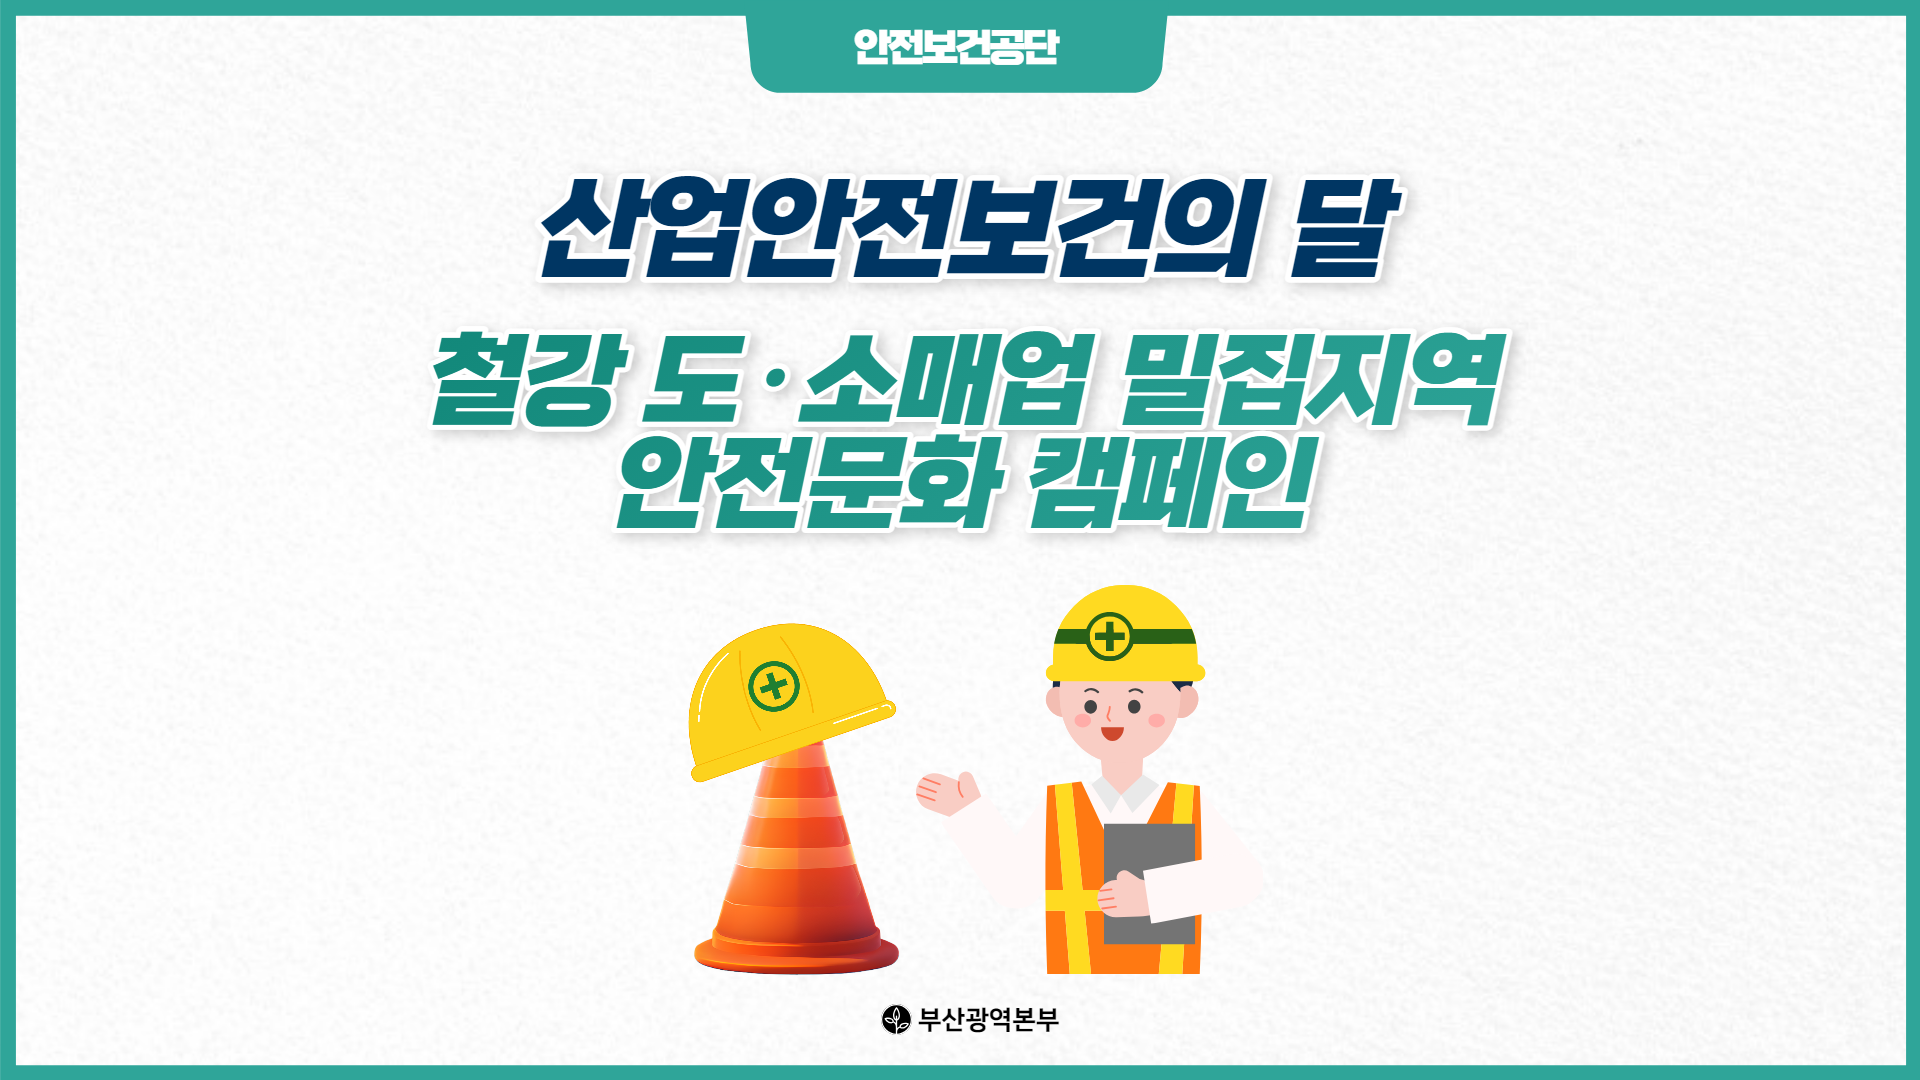 [부산] 산업안전보건의 달 철강 도·소매업 밀집지역 안전문화 캠페인